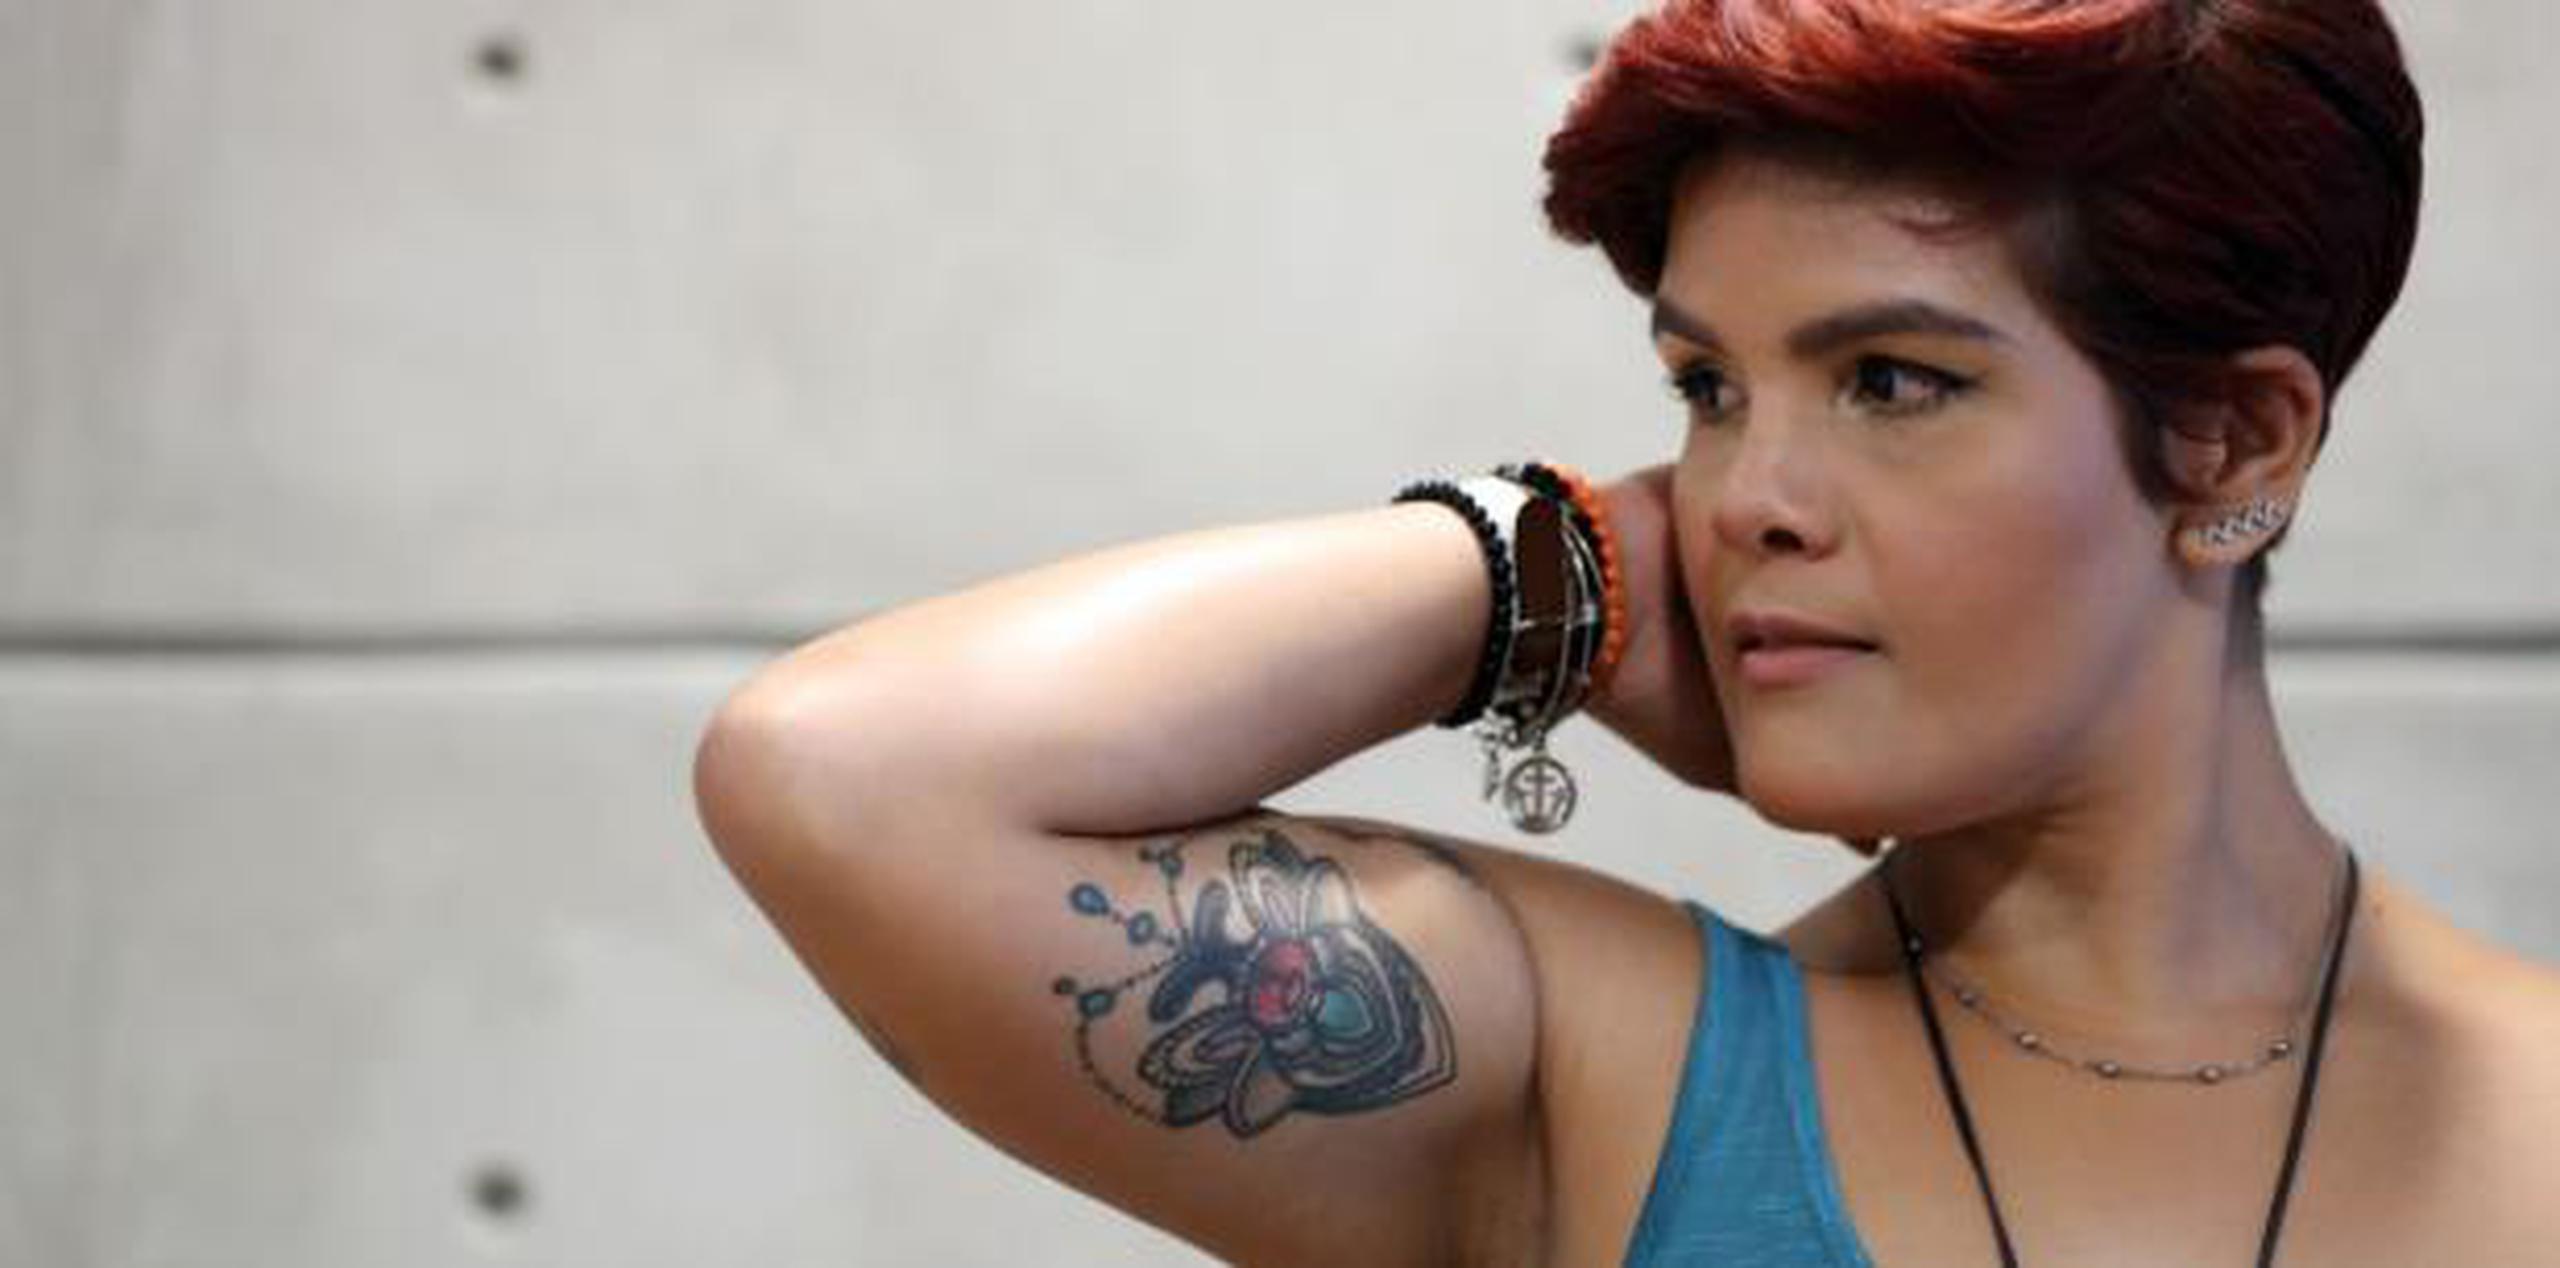 Hasta el momento, Dalmau Ramírez es el único miembro de la Asamblea Legislativa que ha dicho públicamente que tiene un tatuaje. (juan.martinez@primerahora.com)